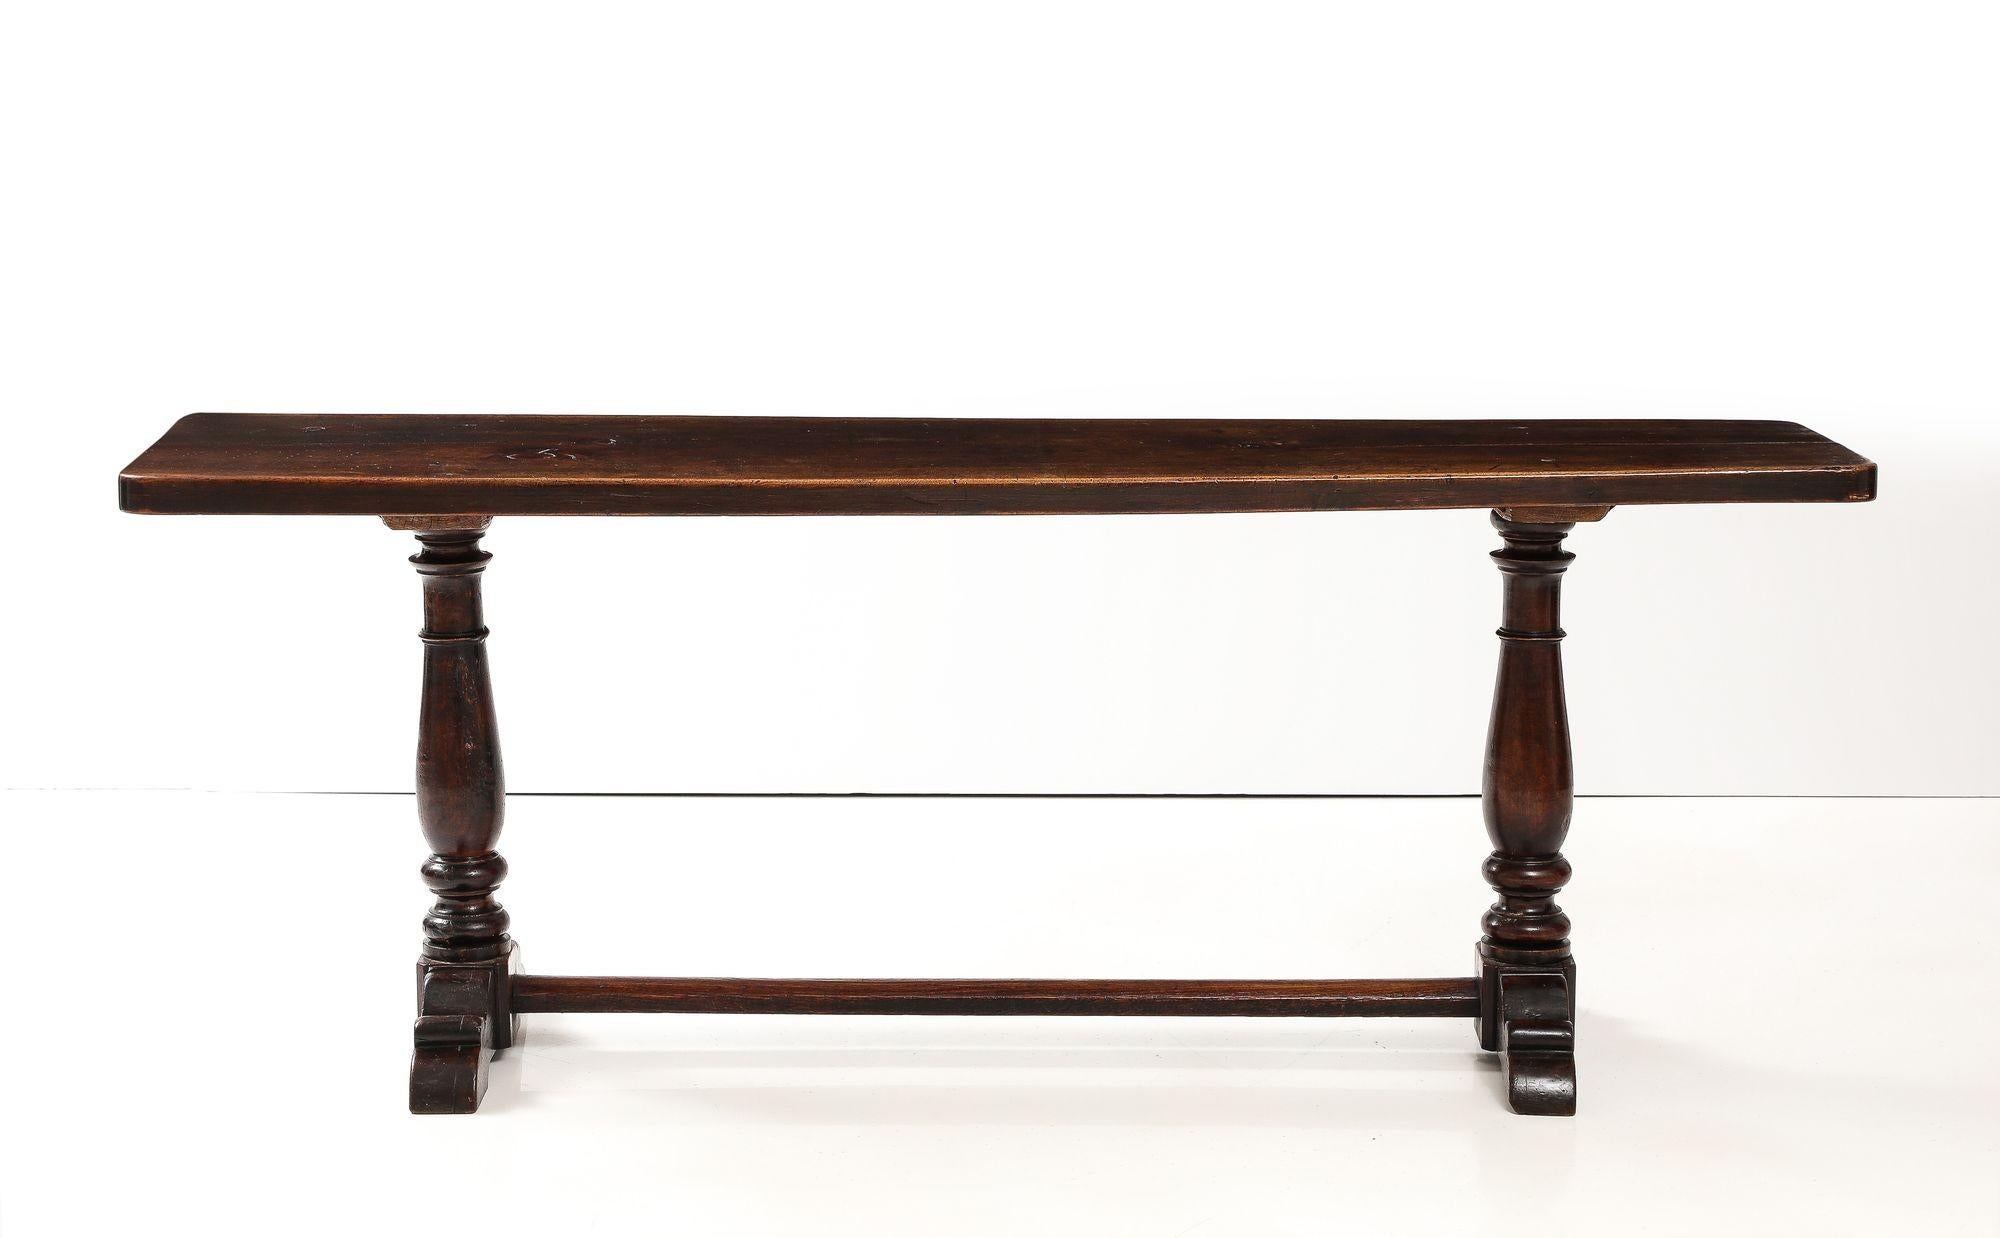 Table à tréteaux en noyer de style baroque italien, dont le plateau imposant a été façonné à partir d'une seule planche, reposant sur des tréteaux à extrémités tournées en balustrade et reliées par des pieds en traîneau, l'ensemble présentant une